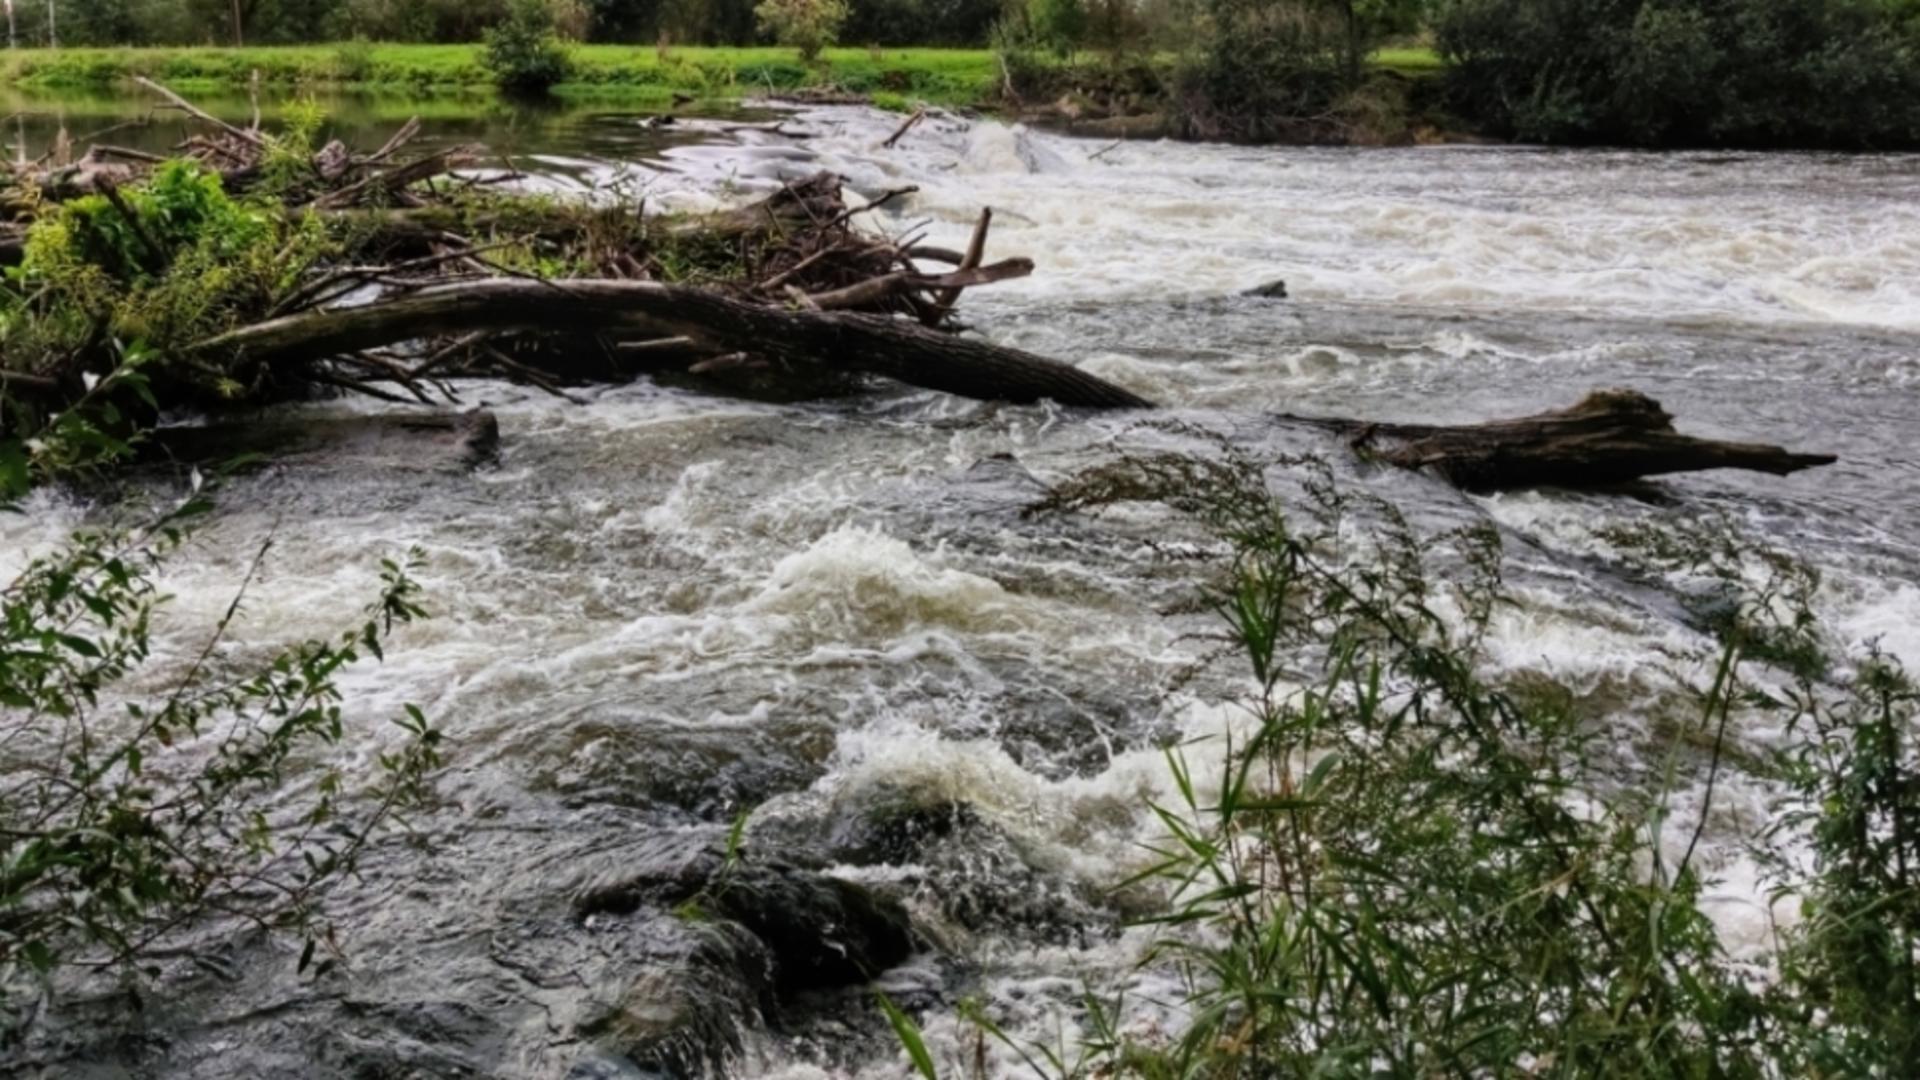 Alertă hidrologică: Este PERICOL de inundații și viituri în mai multe localități din județul Caraș-Severin - Zonele afectate